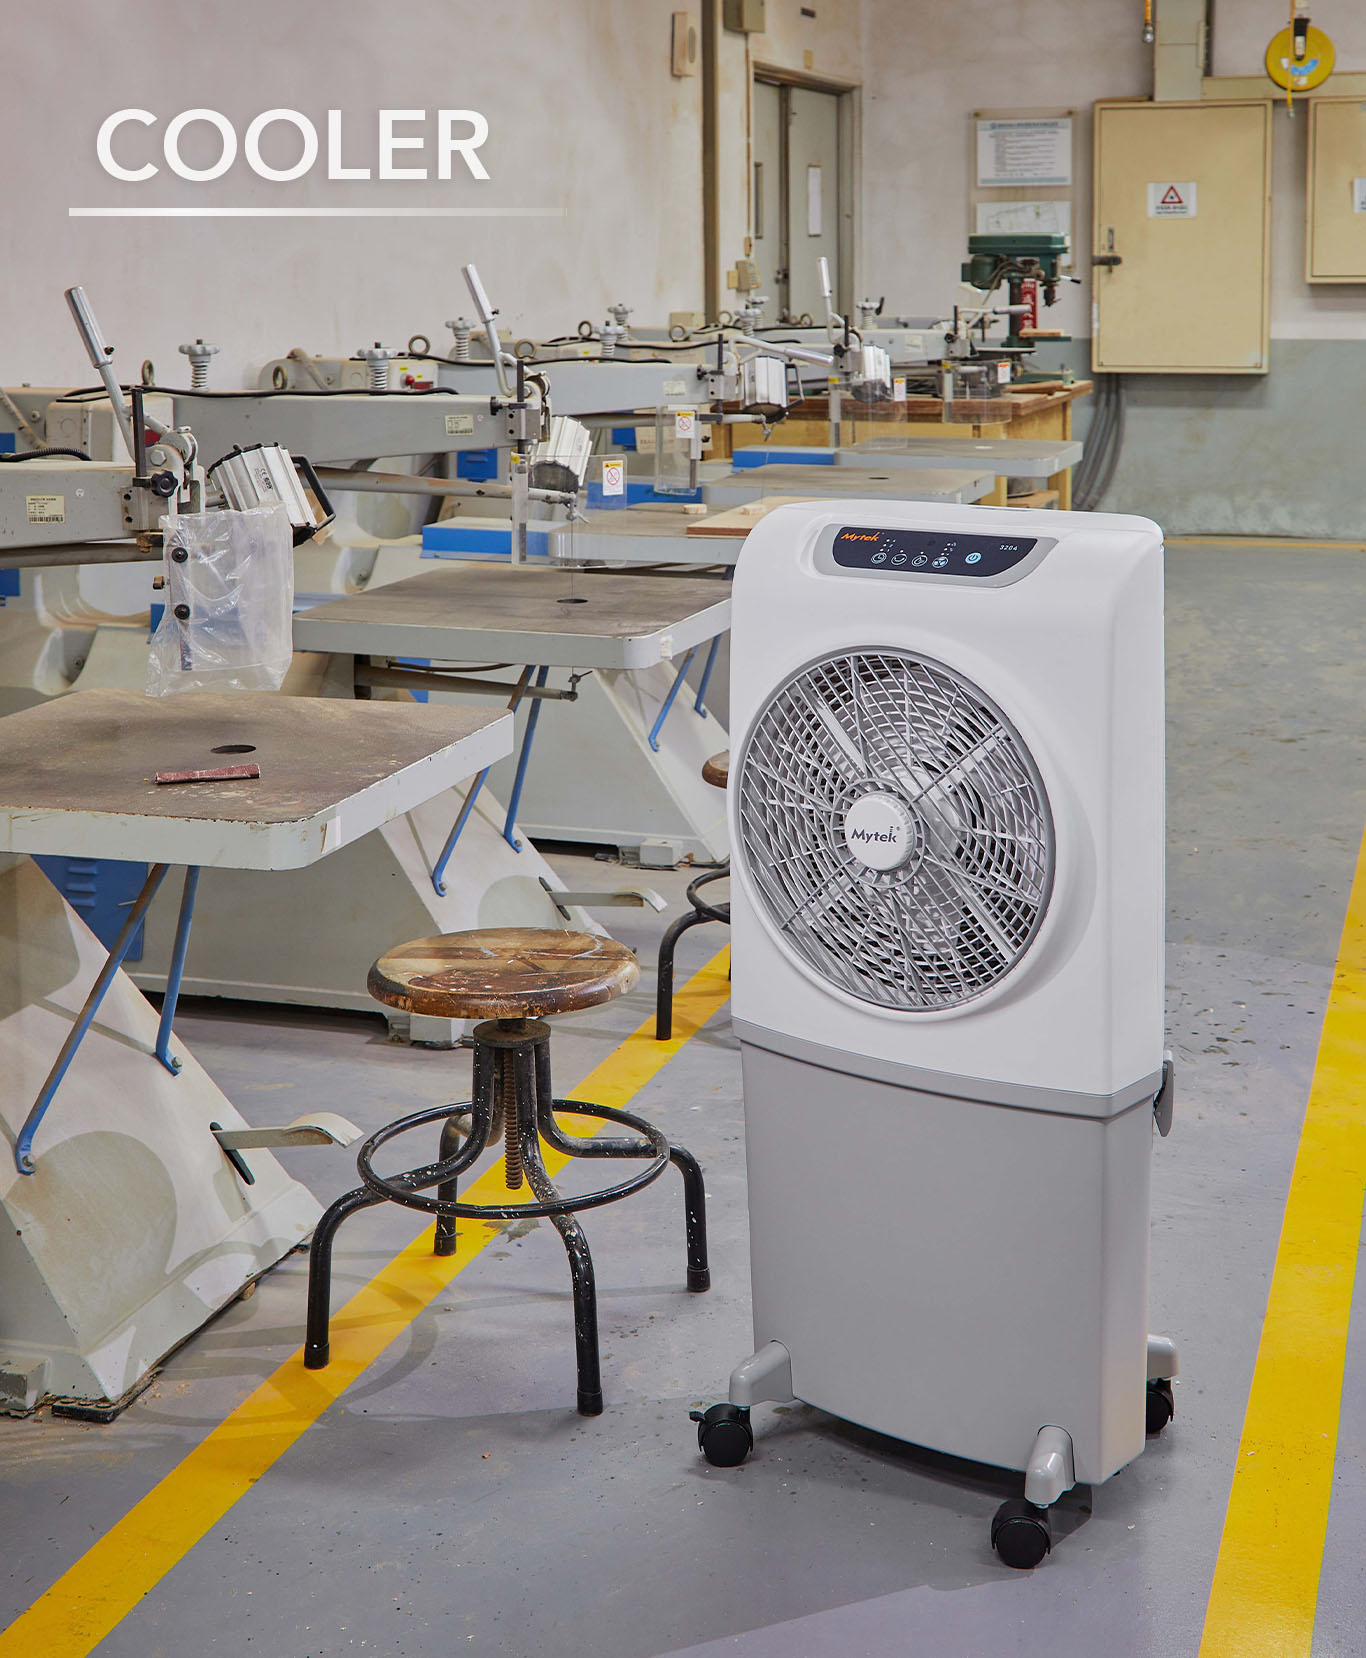 Mytek | Empresa especializada en ventiladores, enfriadores y juguetes.